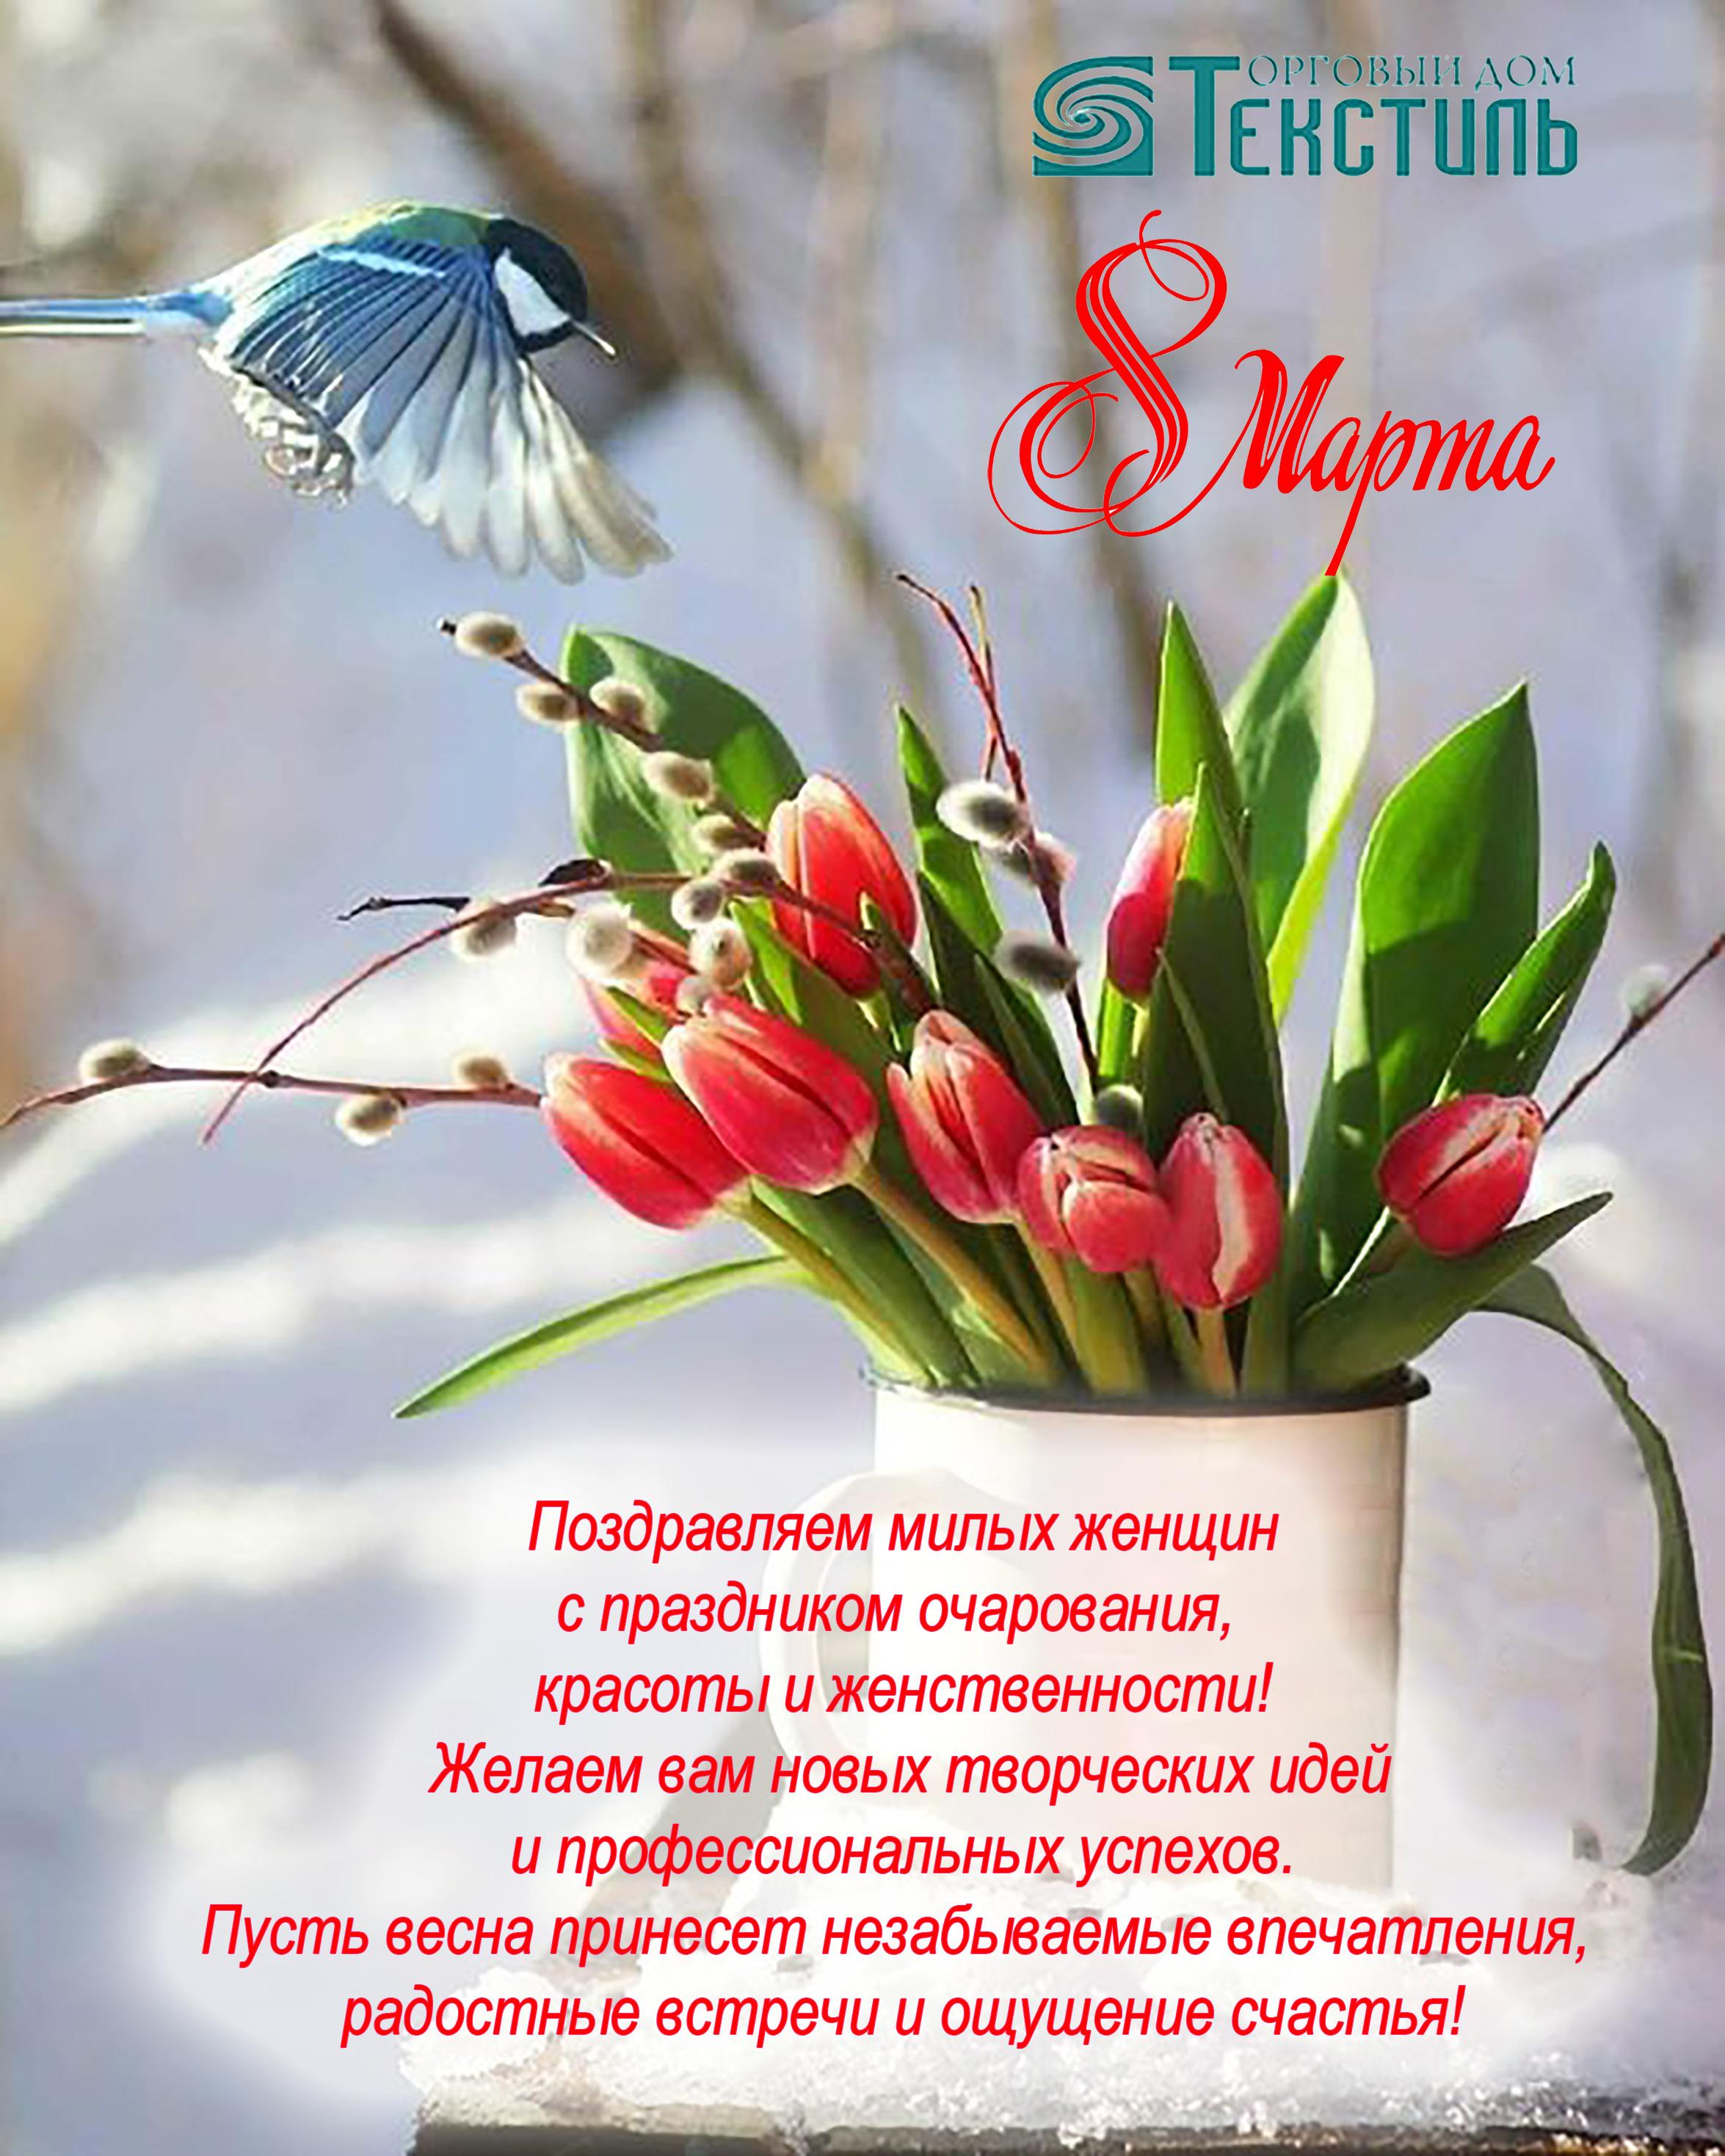 Подарить Вставка С Праздником Весны! цена 90 ₽ экспресс доставка Томск